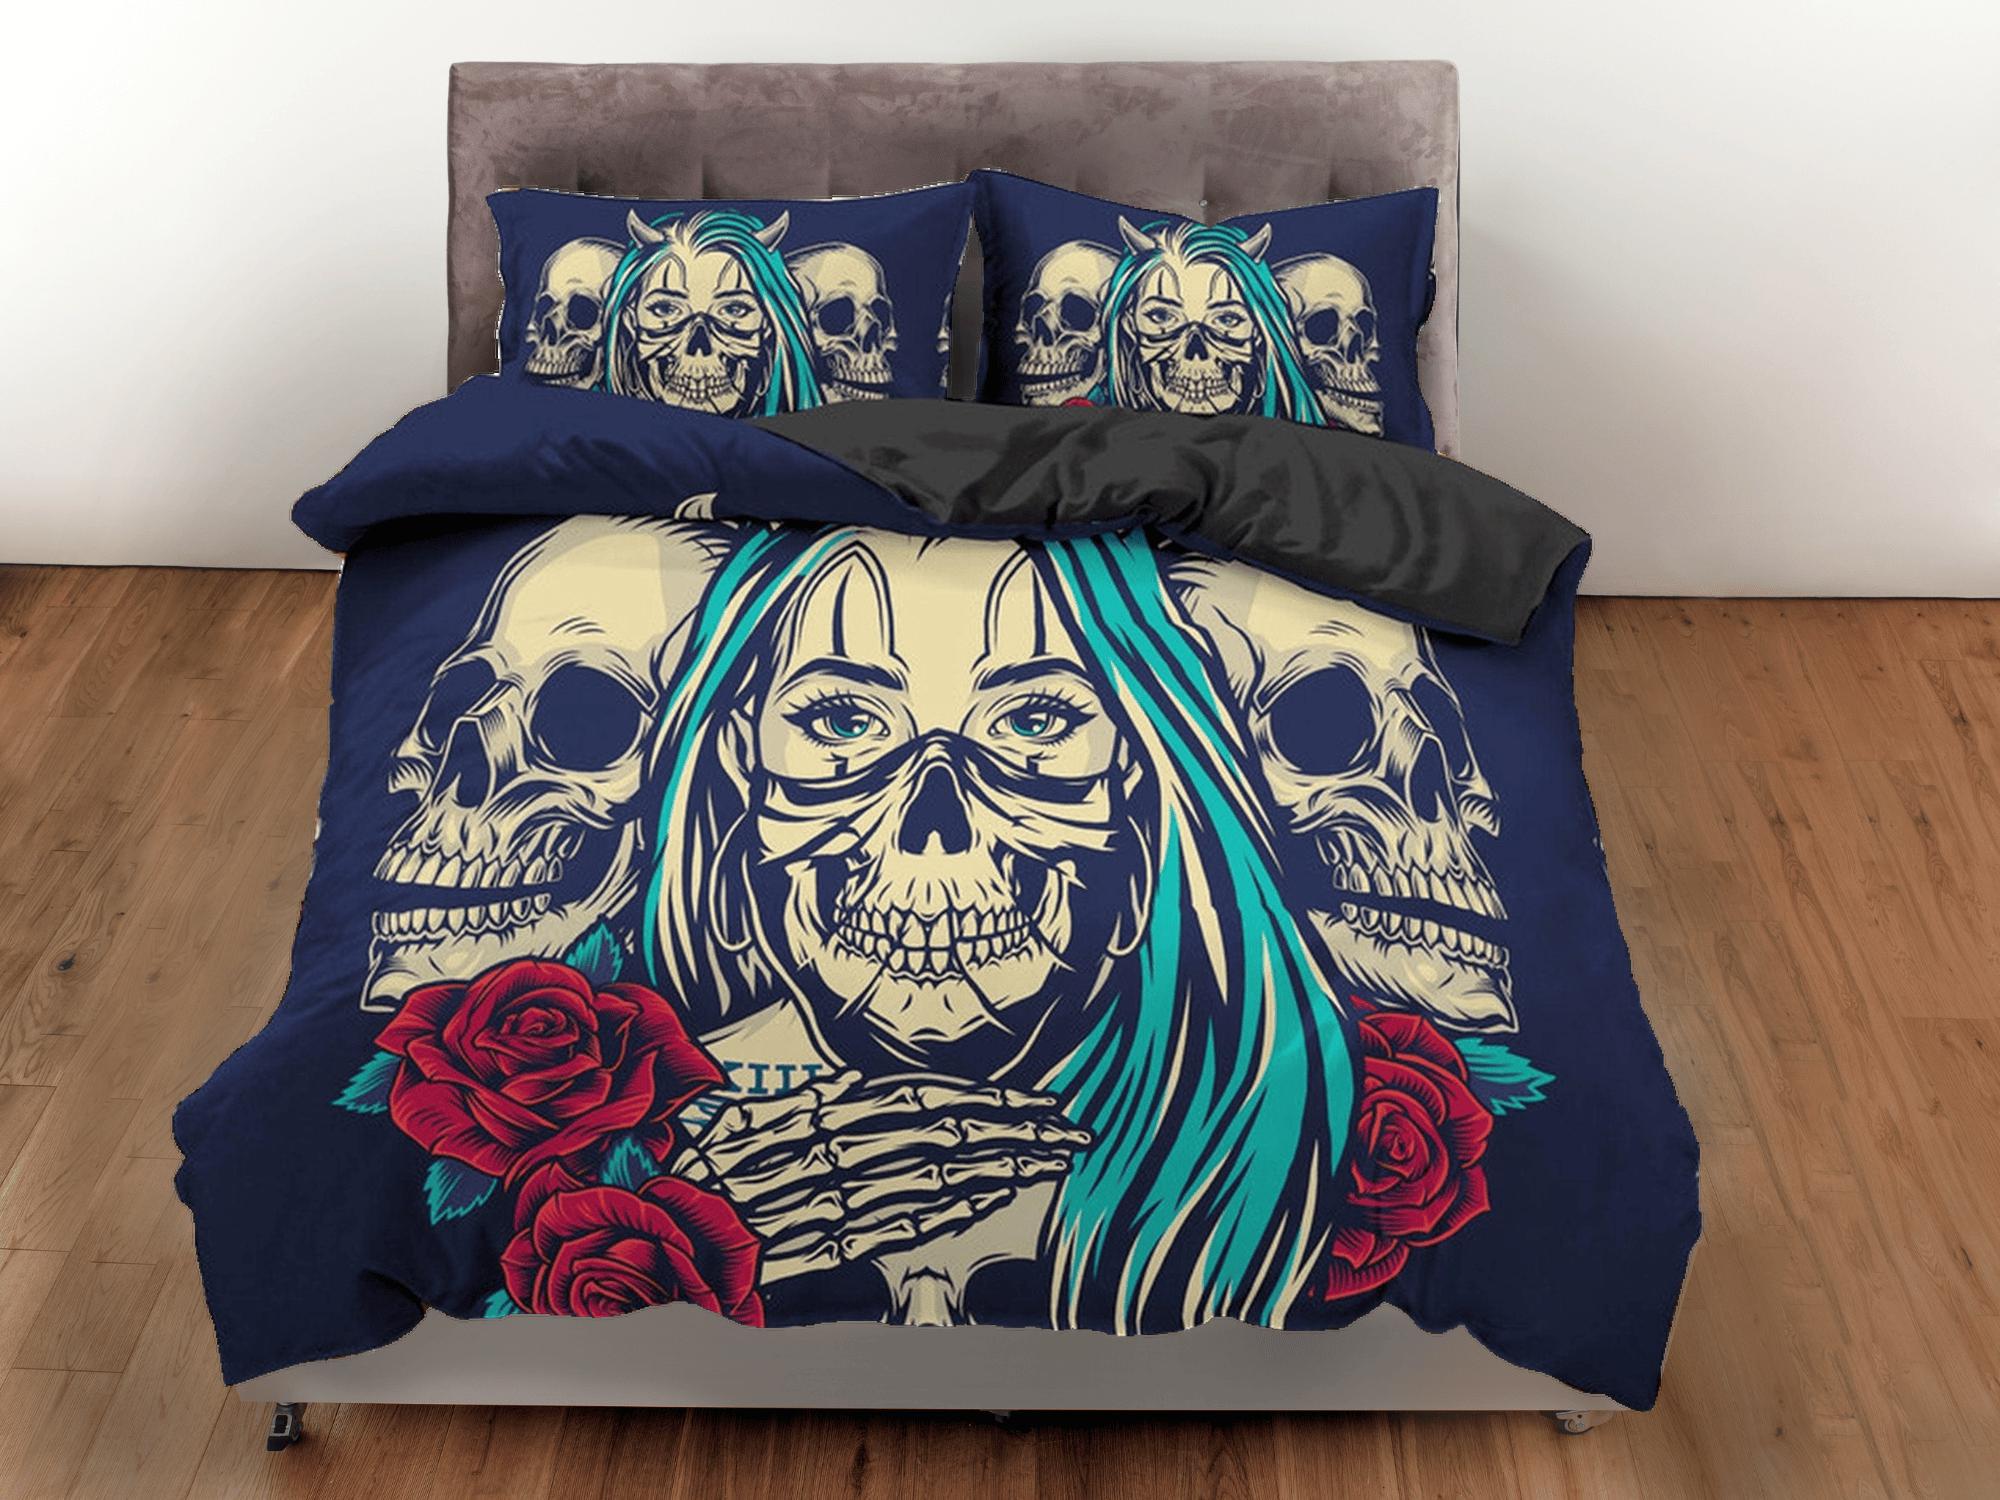 daintyduvet Skull and Roses Black Duvet Cover Set Gangster Bedspread Dorm Bedding Pillowcase Comforter Cover